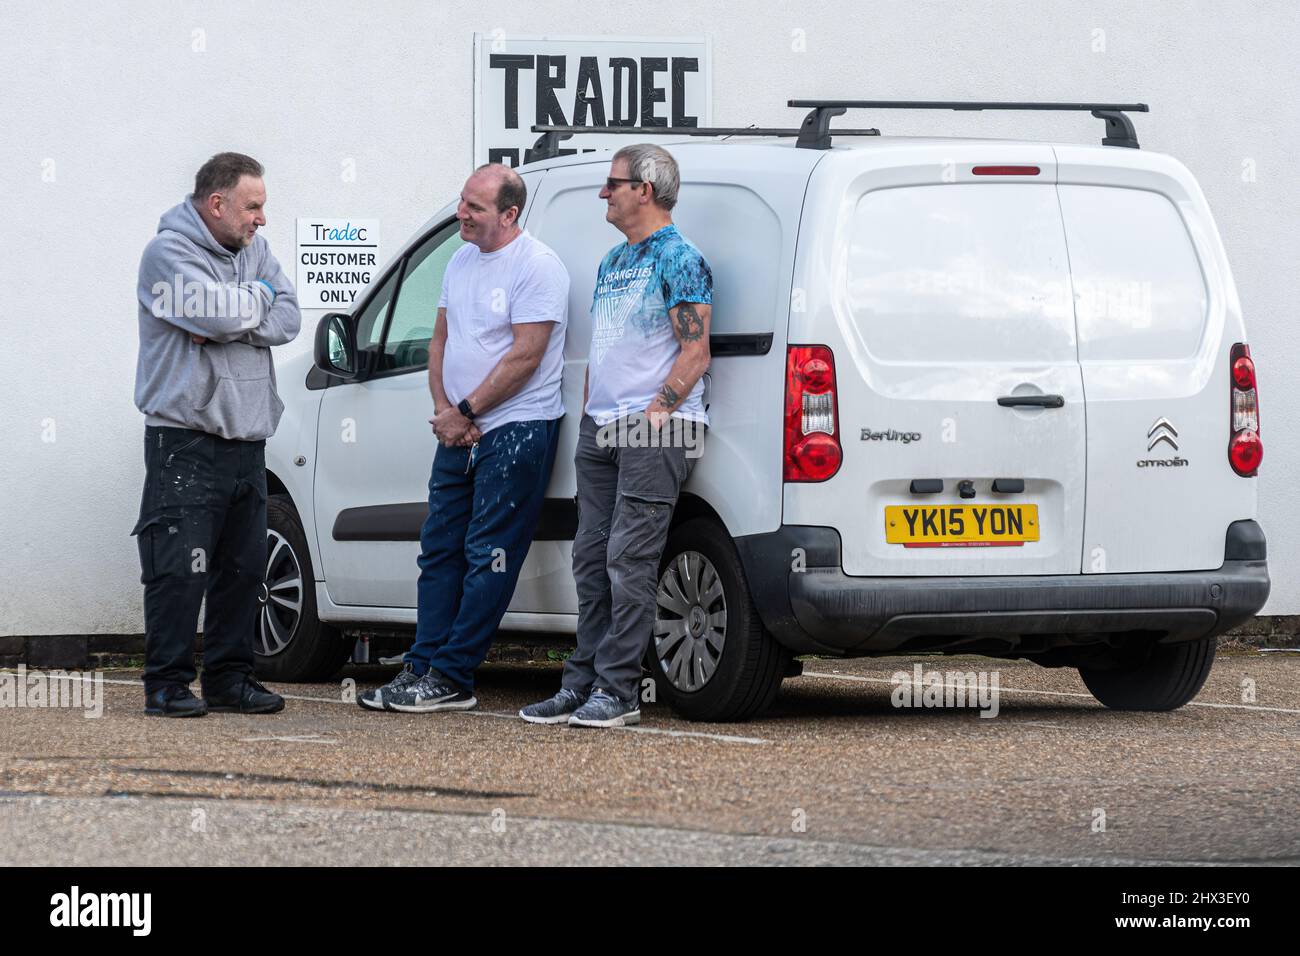 Tres hombres de trabajo pintores de pie en una furgoneta charlando y bromeando en el aparcamiento de un negocio de pintura y decoración, Reino Unido vida laboral cotidiana Foto de stock